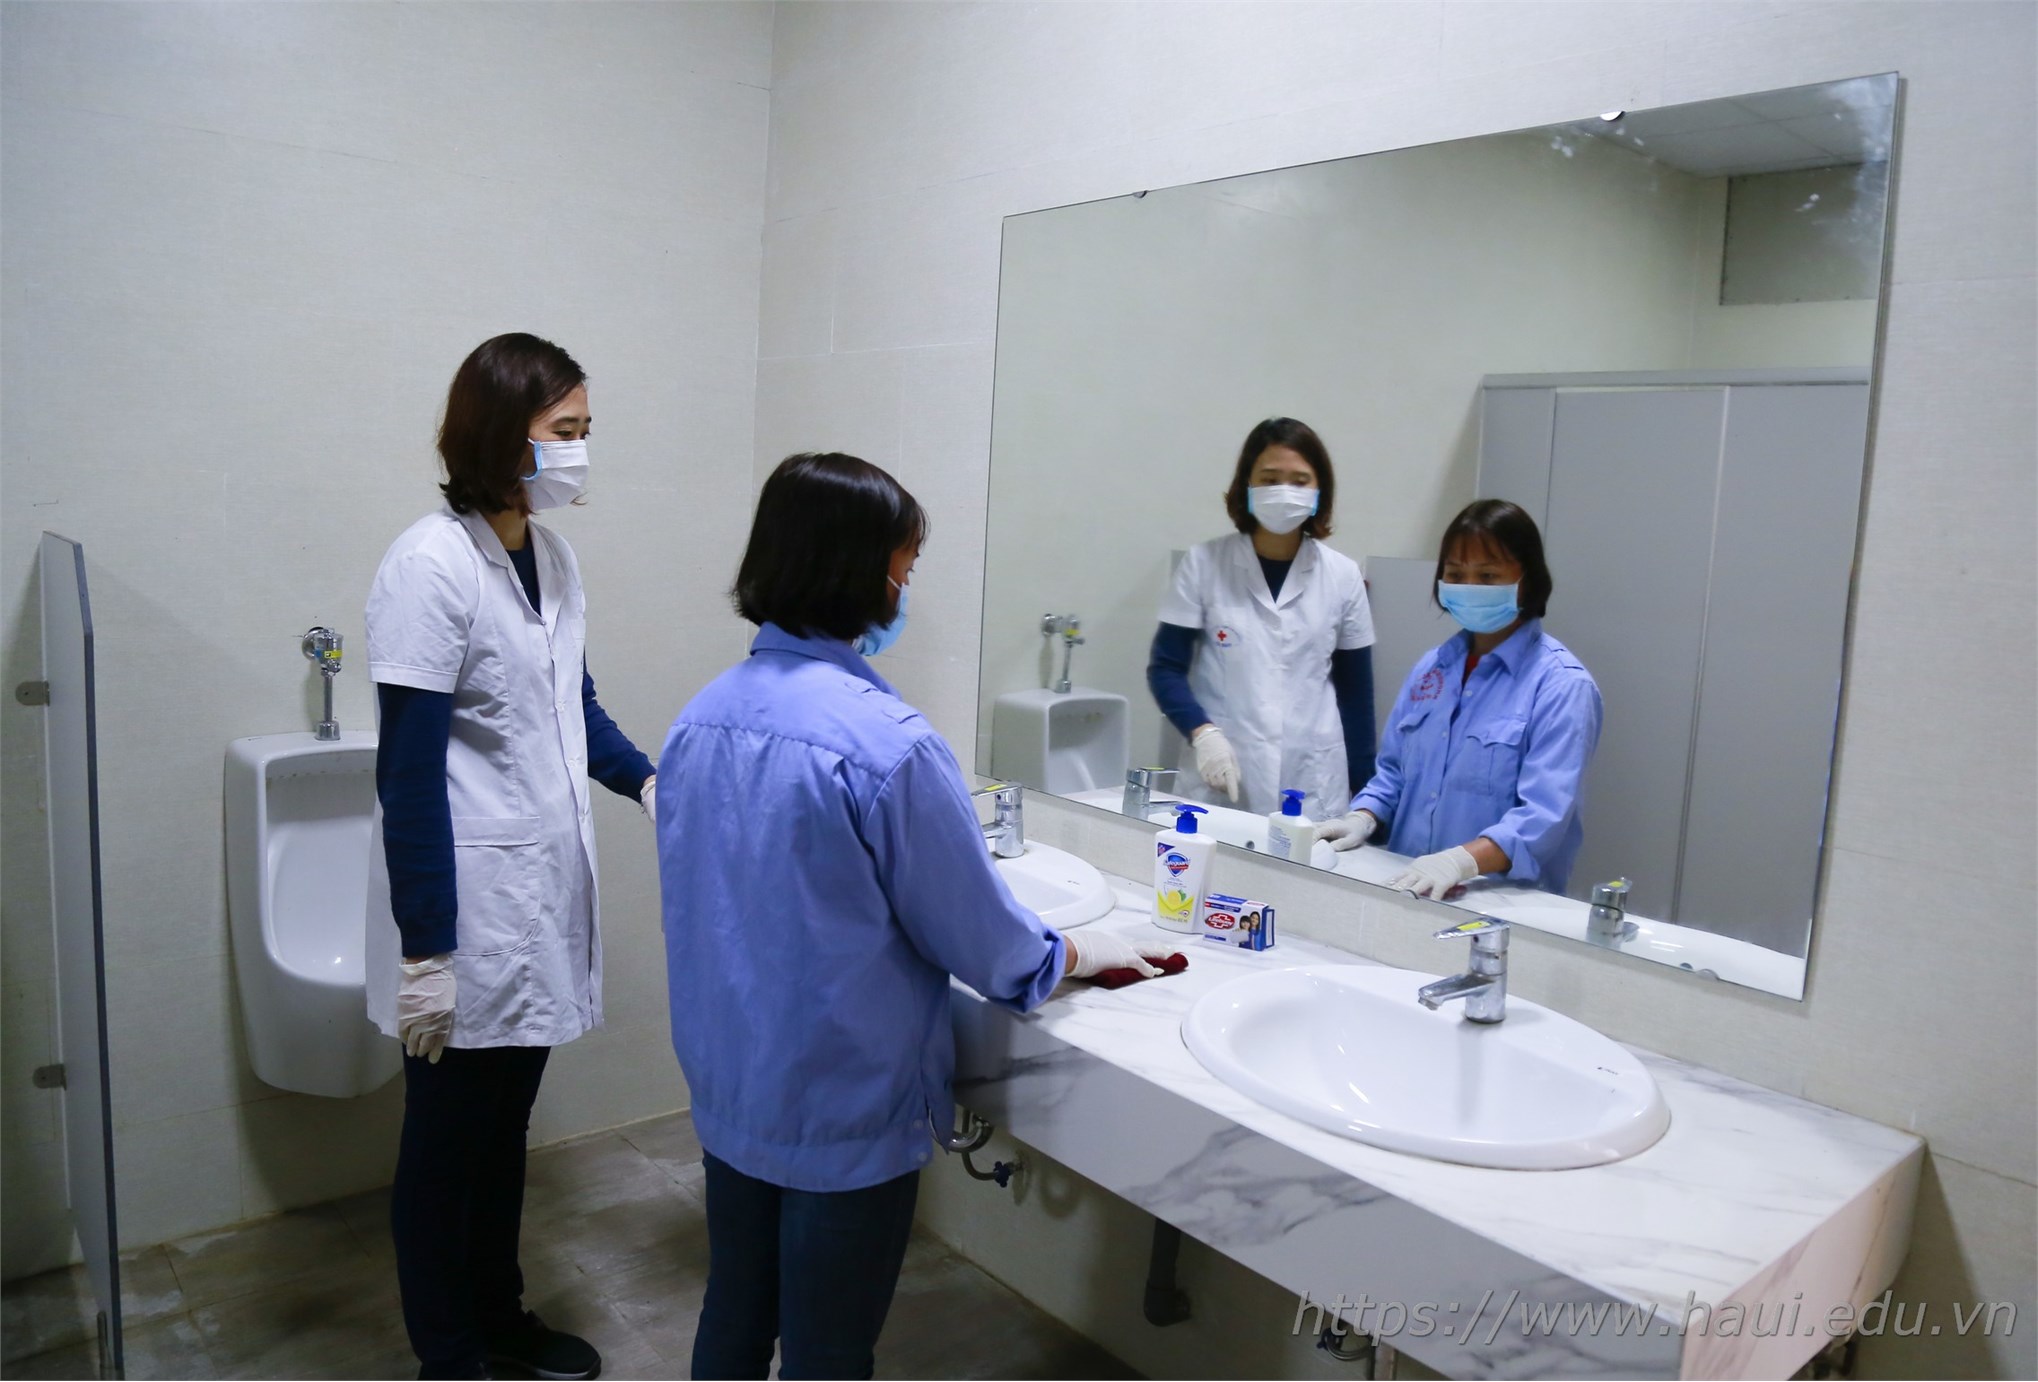 Trường Đại học Công nghiệp Hà Nội vệ sinh khử trùng phòng dịch bệnh